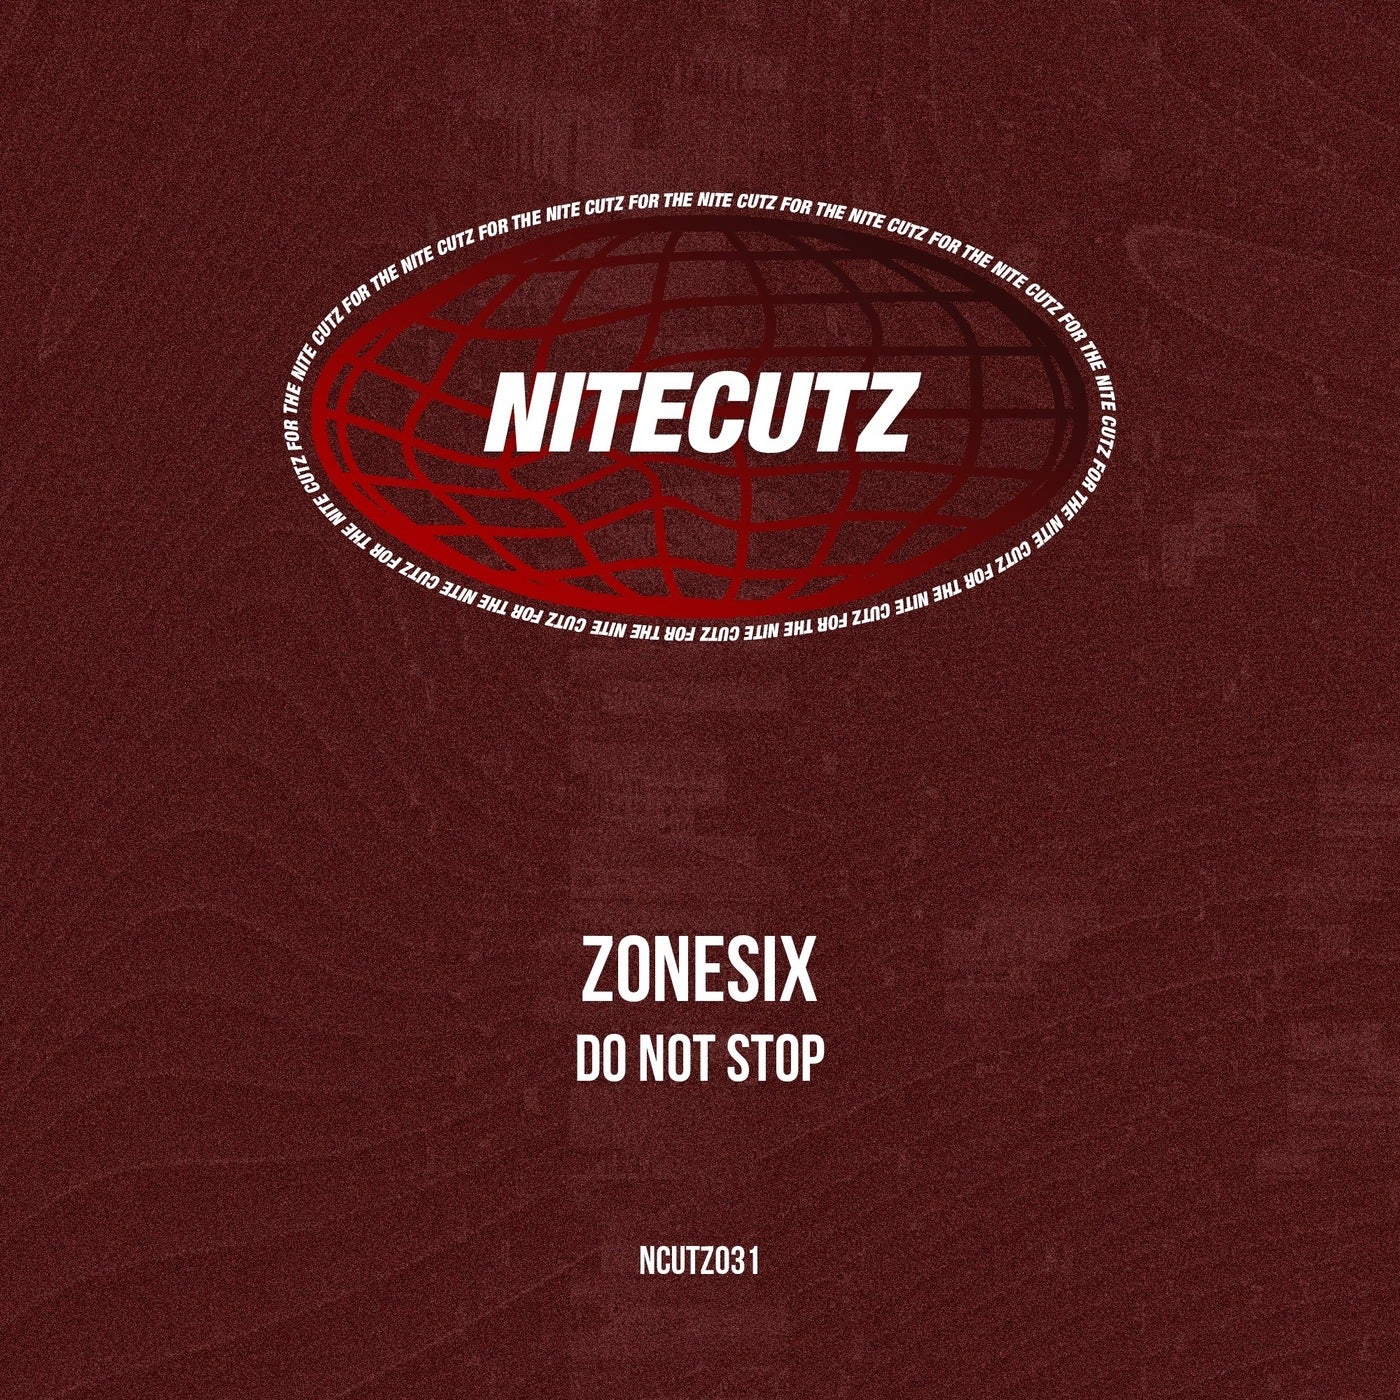 image cover: Zonesix - Do Not Stop on Nitecutz